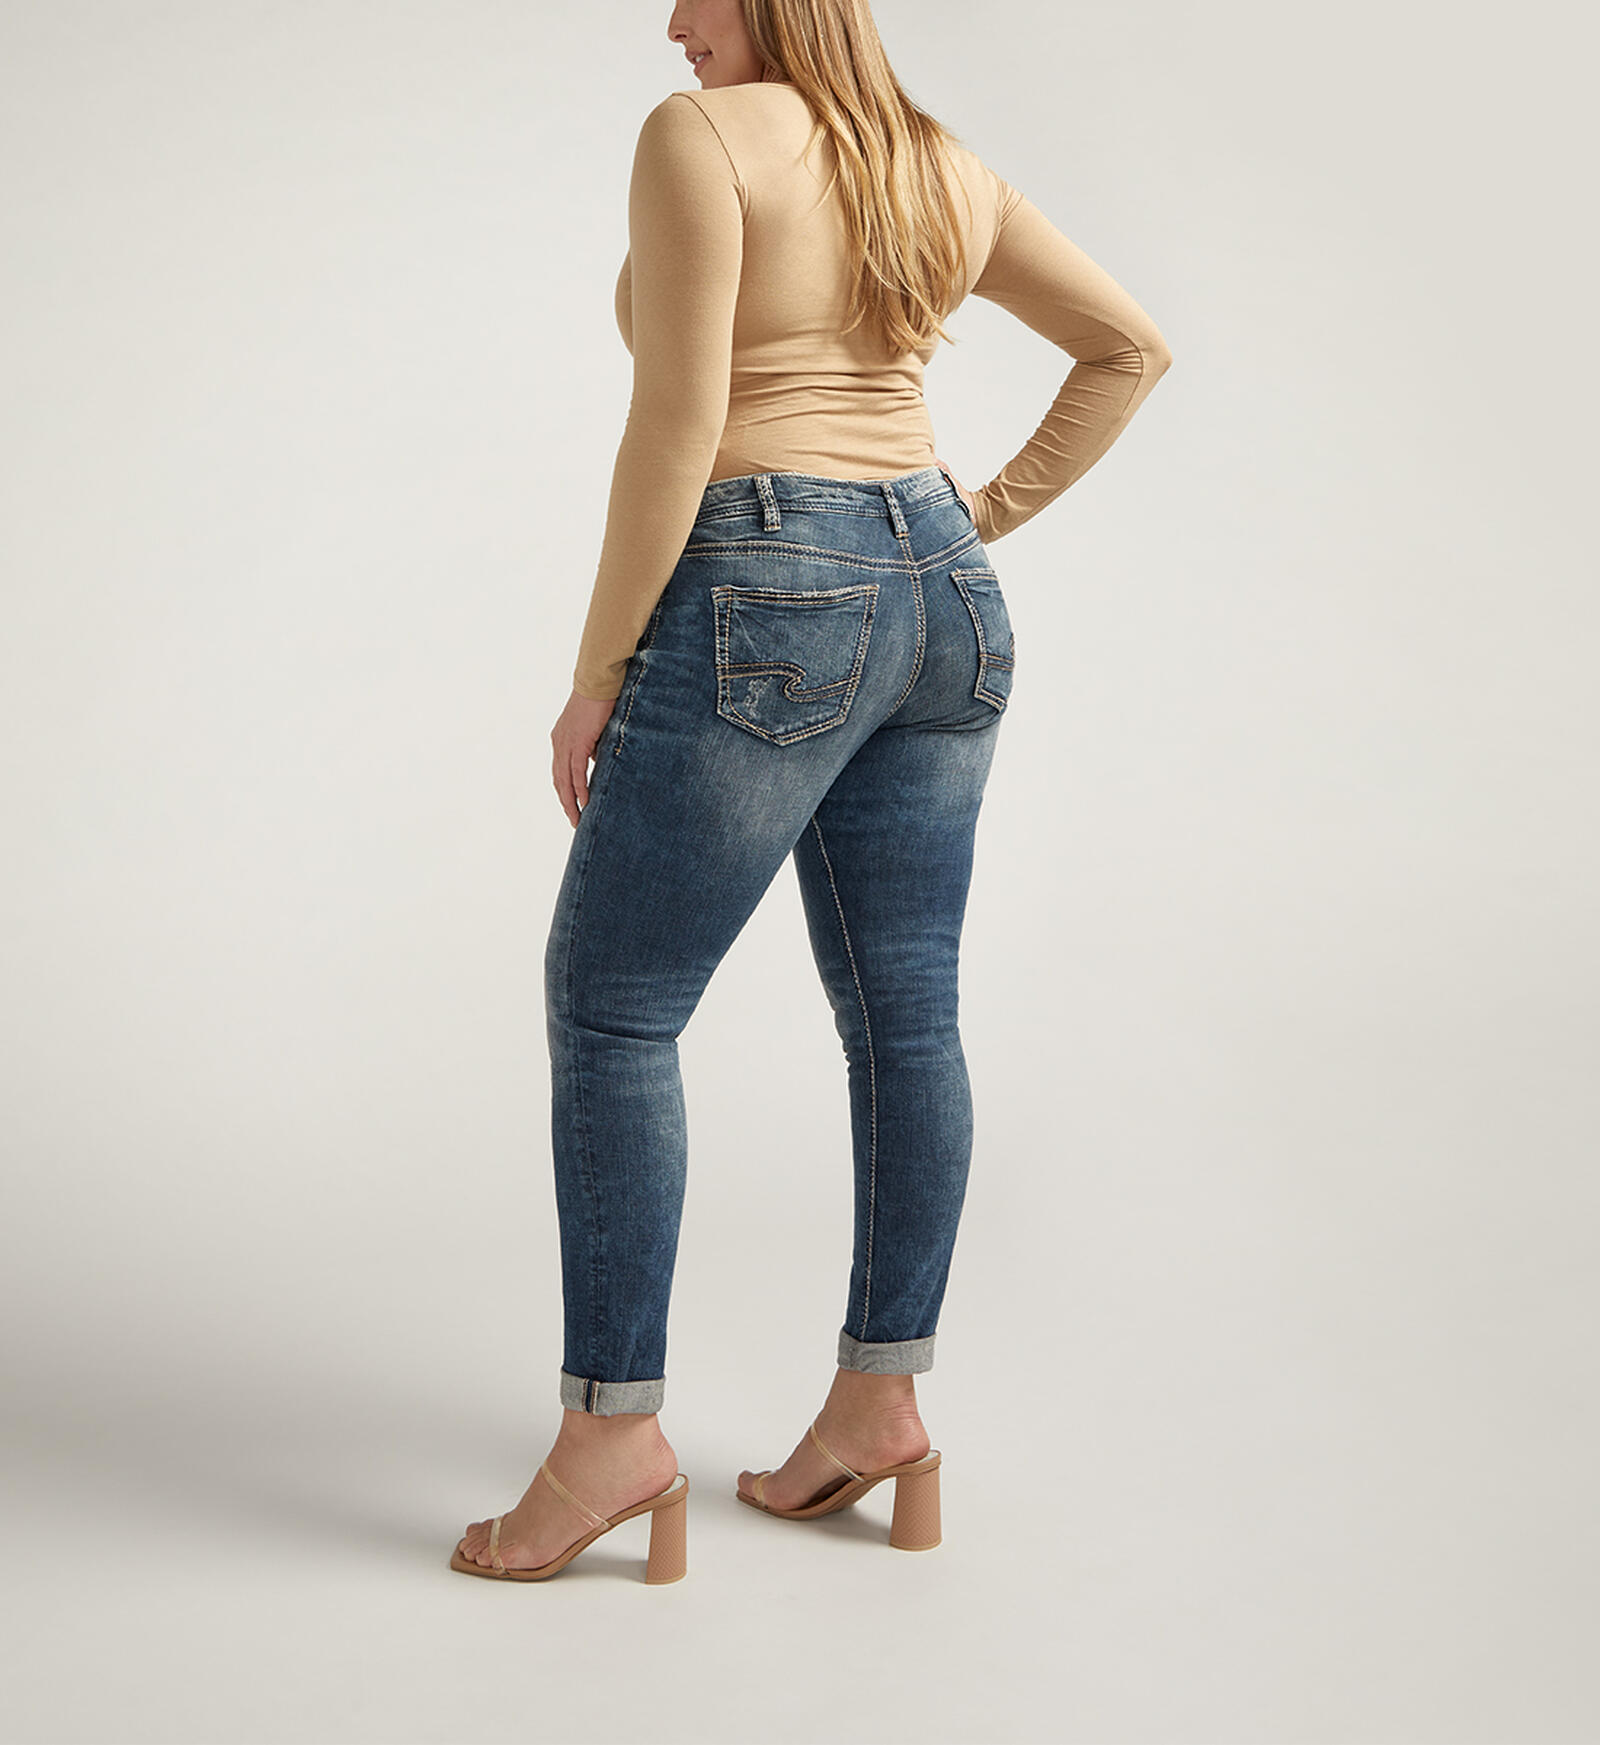 Silver Jeans Co. Women's Girlfriend Mid Rise Skinny Jeans, Waist Sizes  24-34 